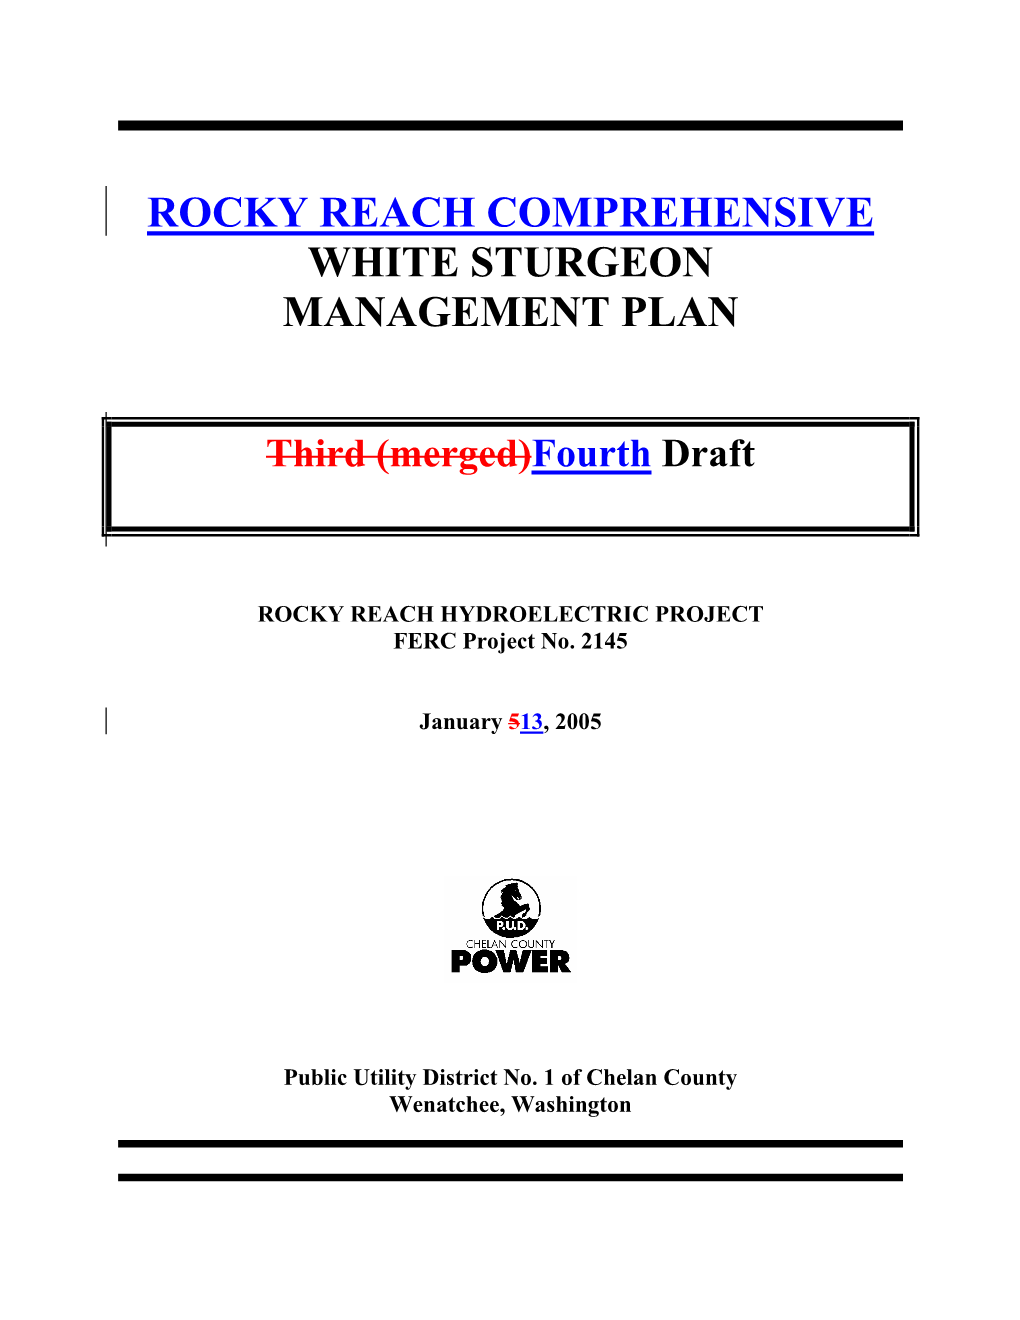 Rocky Reach Comprehensive White Sturgeon Management Plan